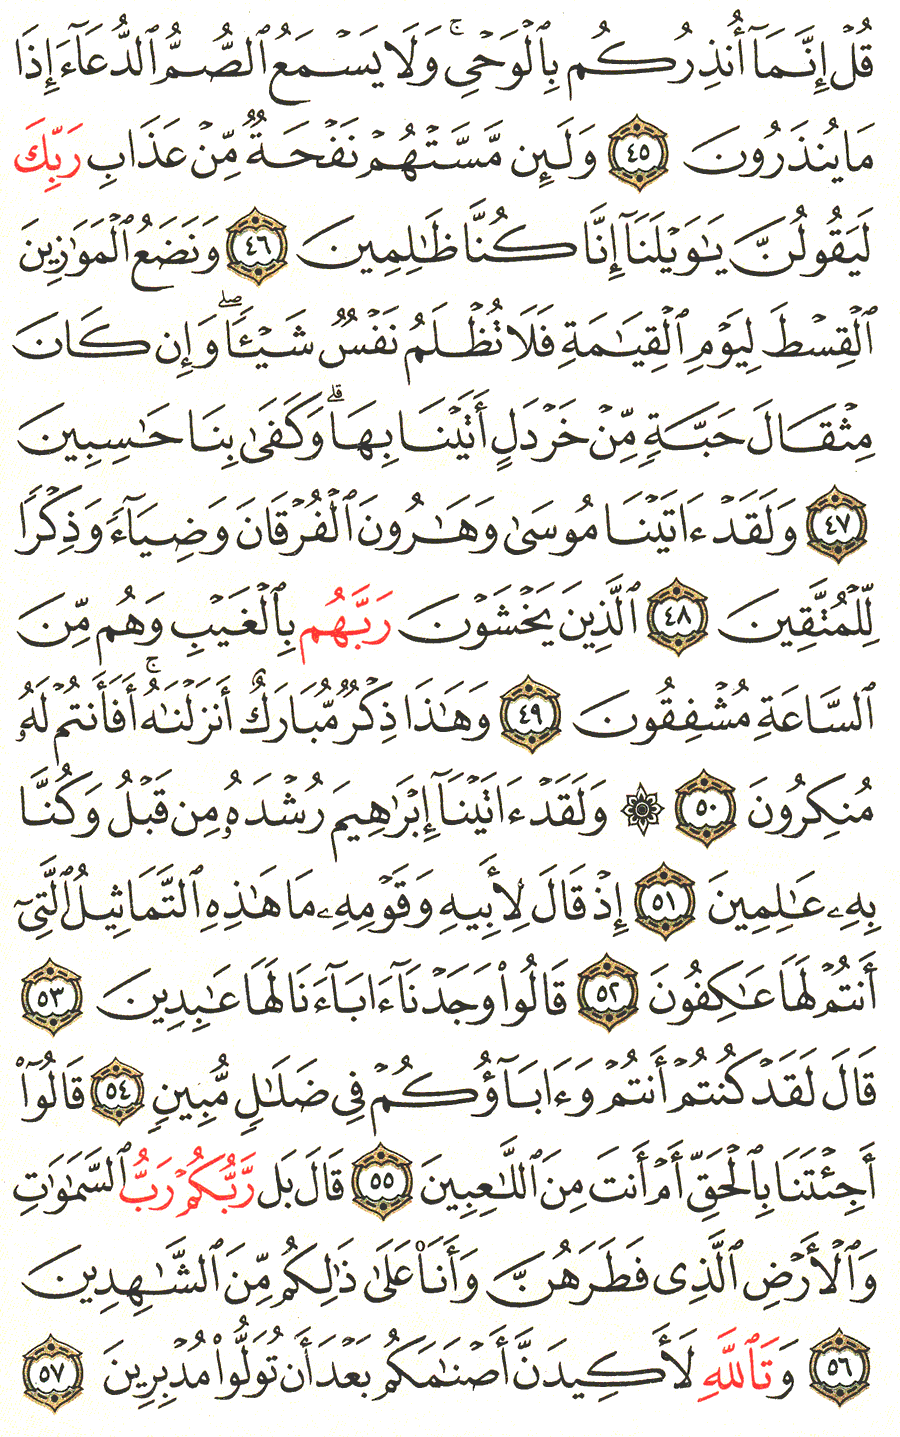 الصفحة 326 من القرآن الكريم